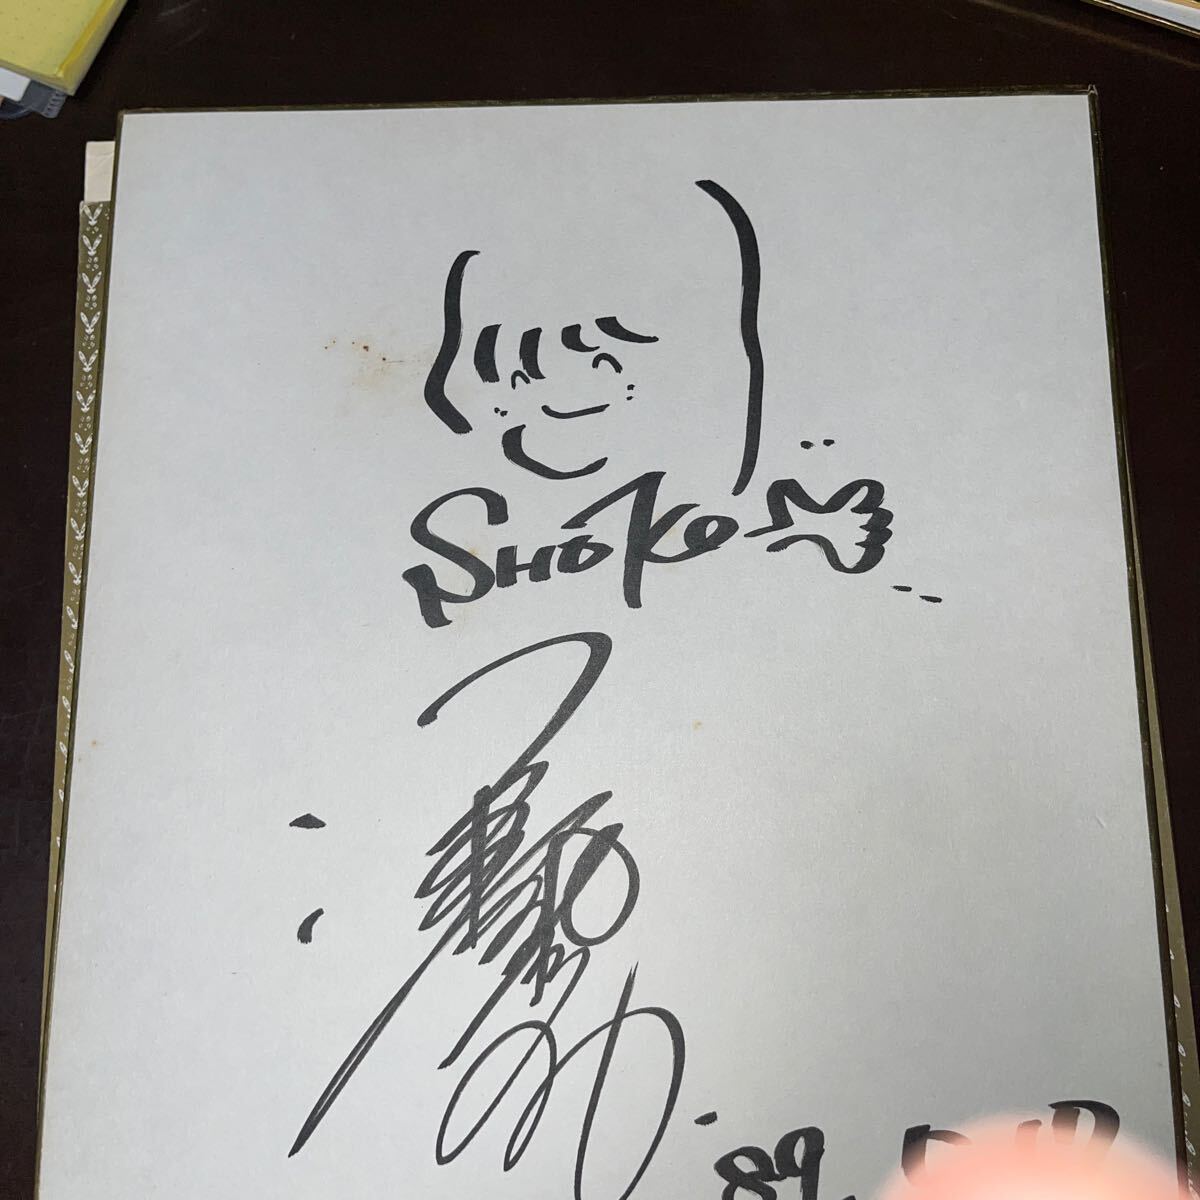  с автографом карточка для автографов, стихов, пожеланий Sawada Shoko Showa художник 